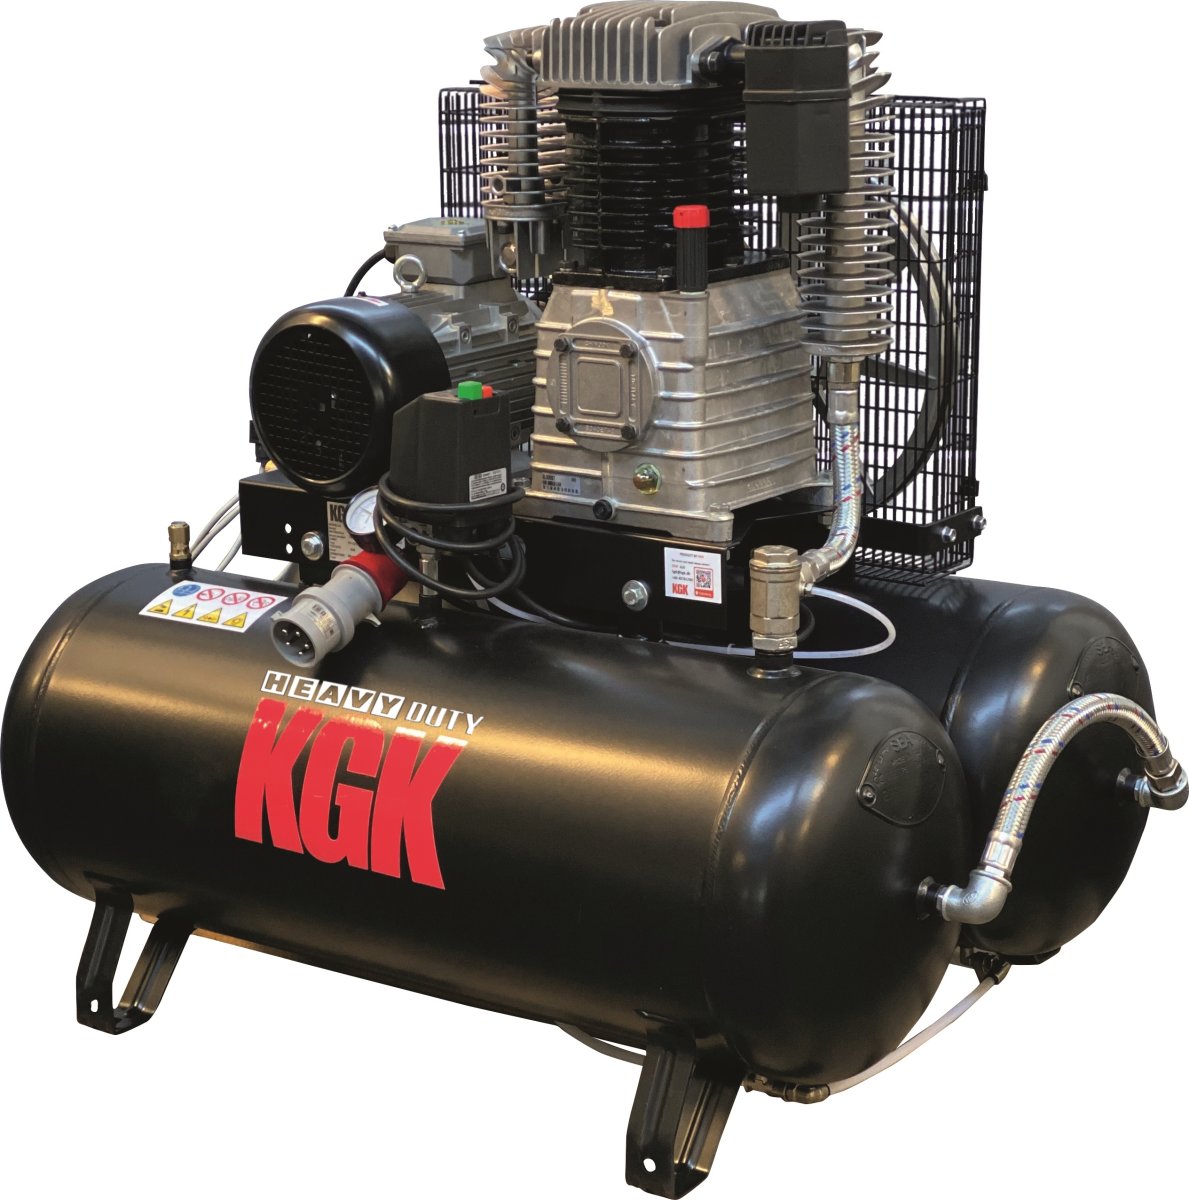 KGK 90+90/5530 Kompressor